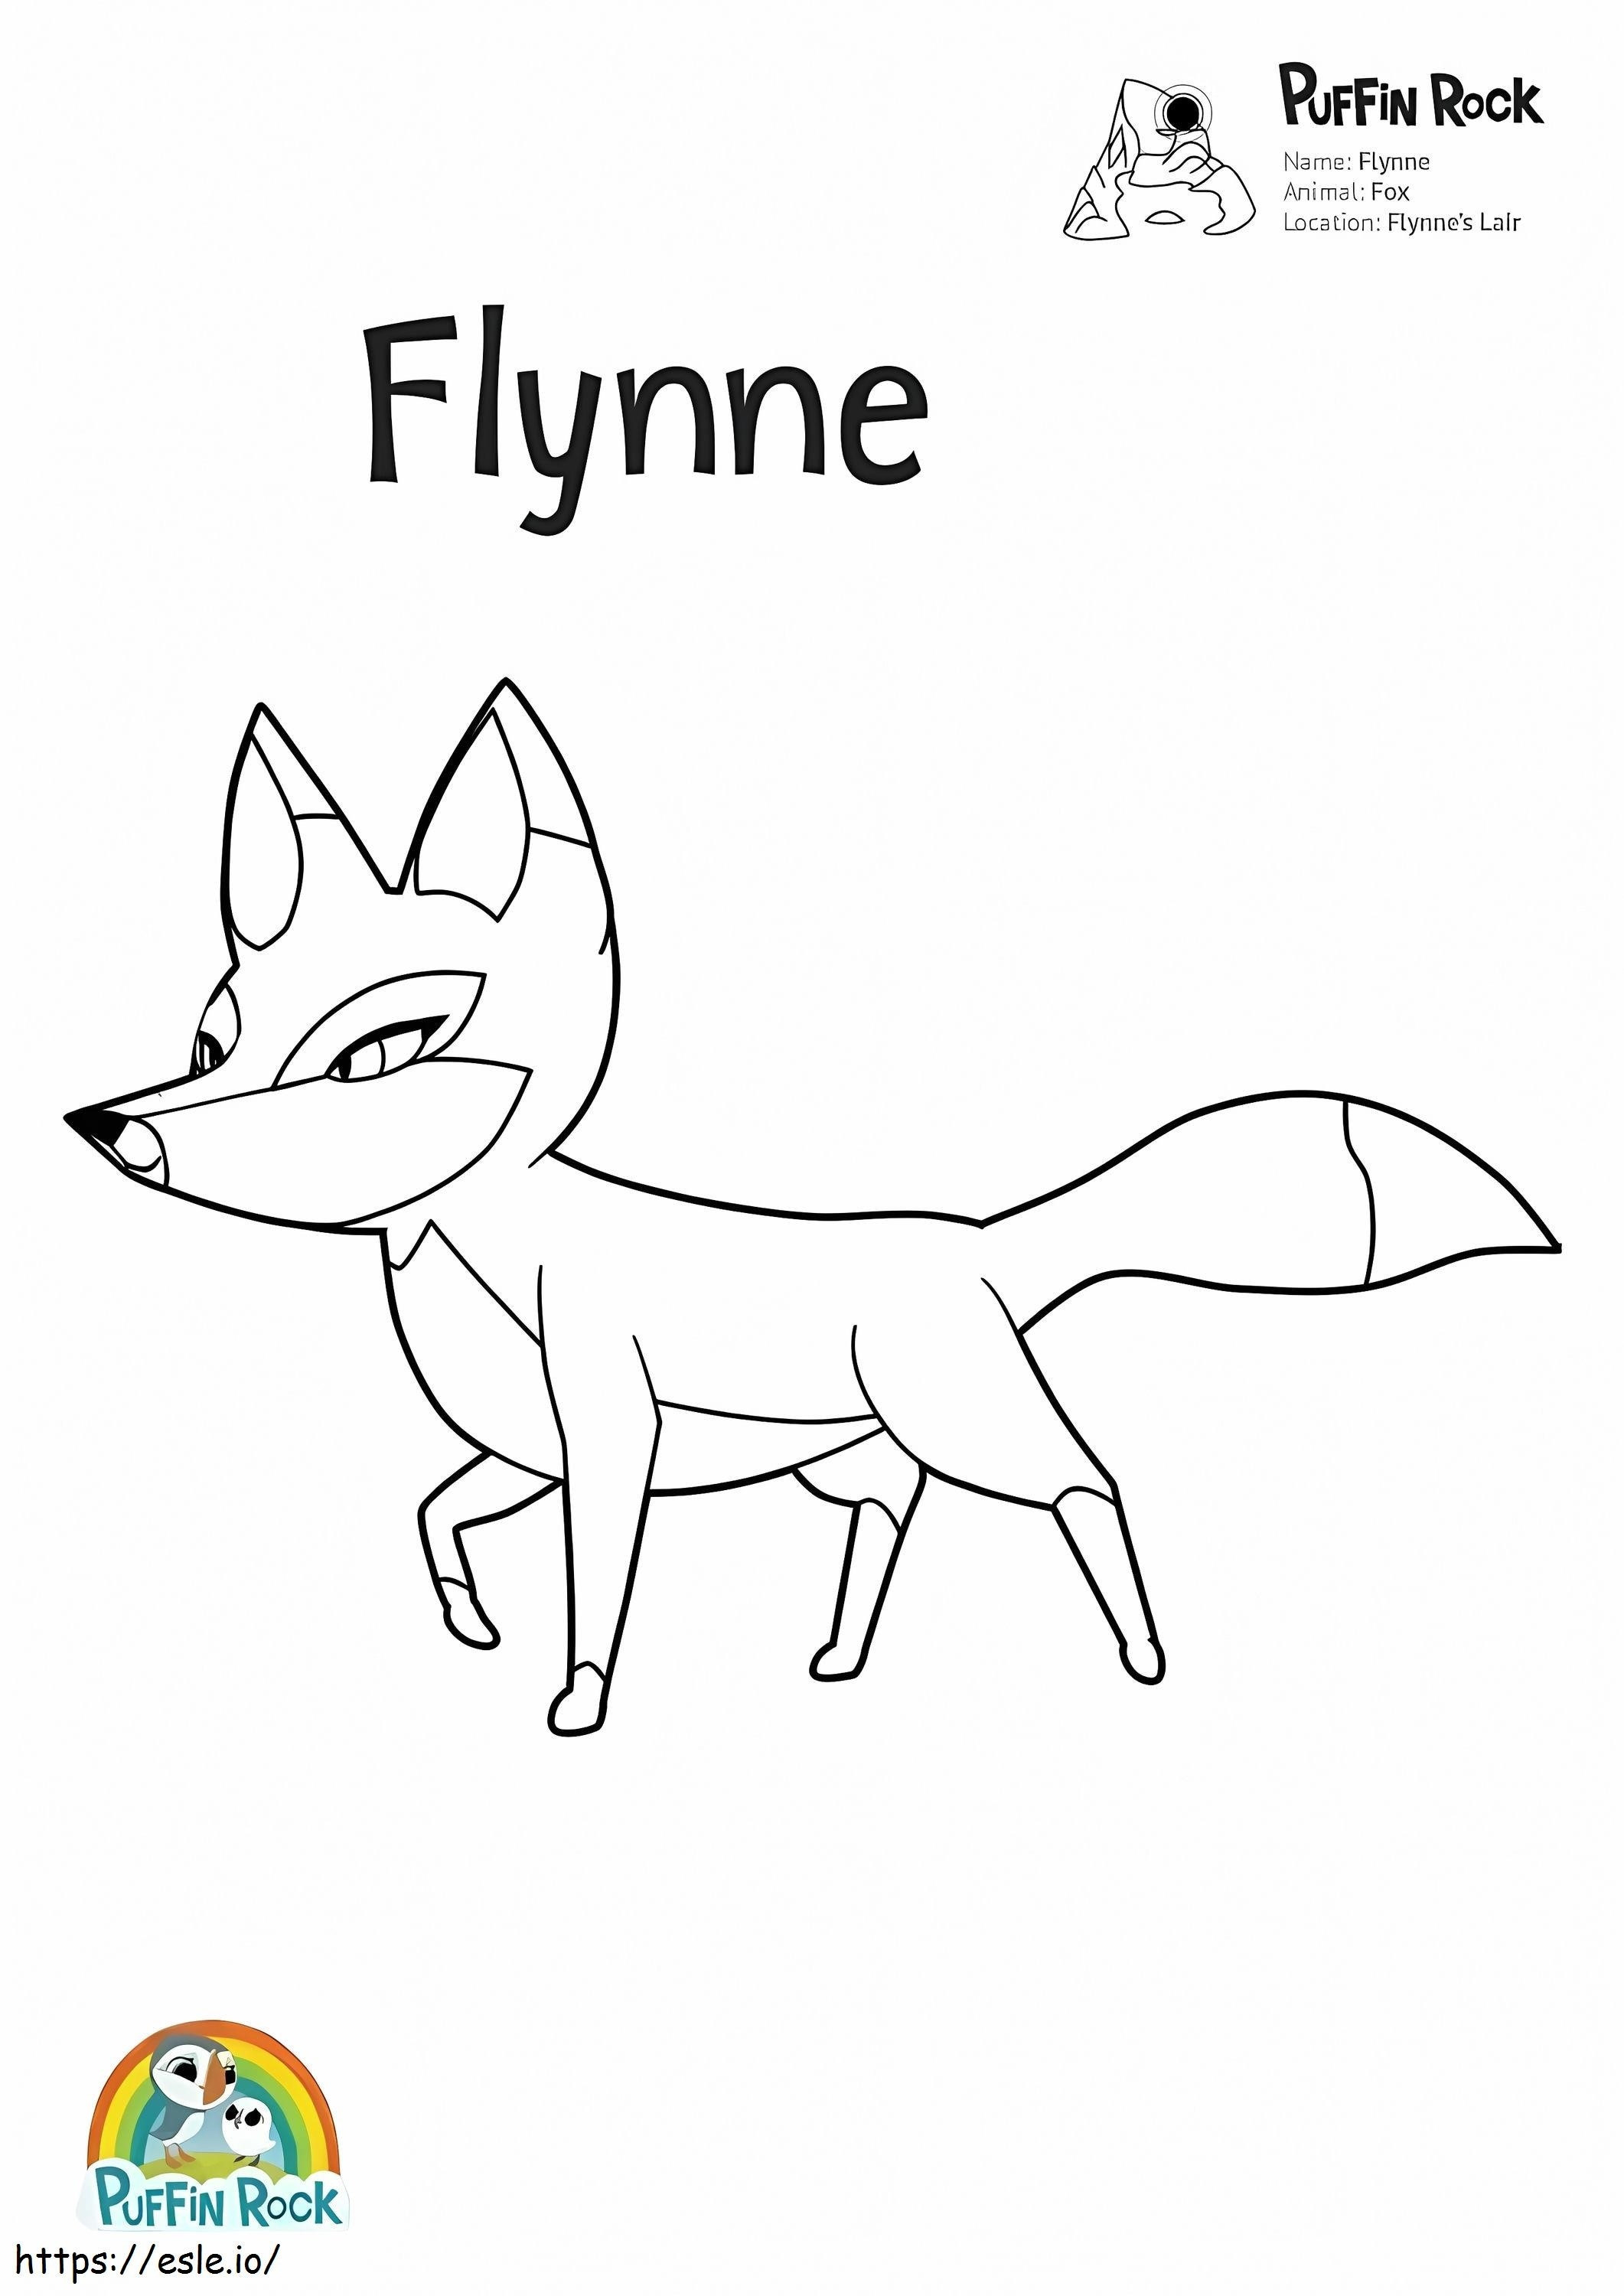  Puffin Rock Flynne Página 001 para colorear